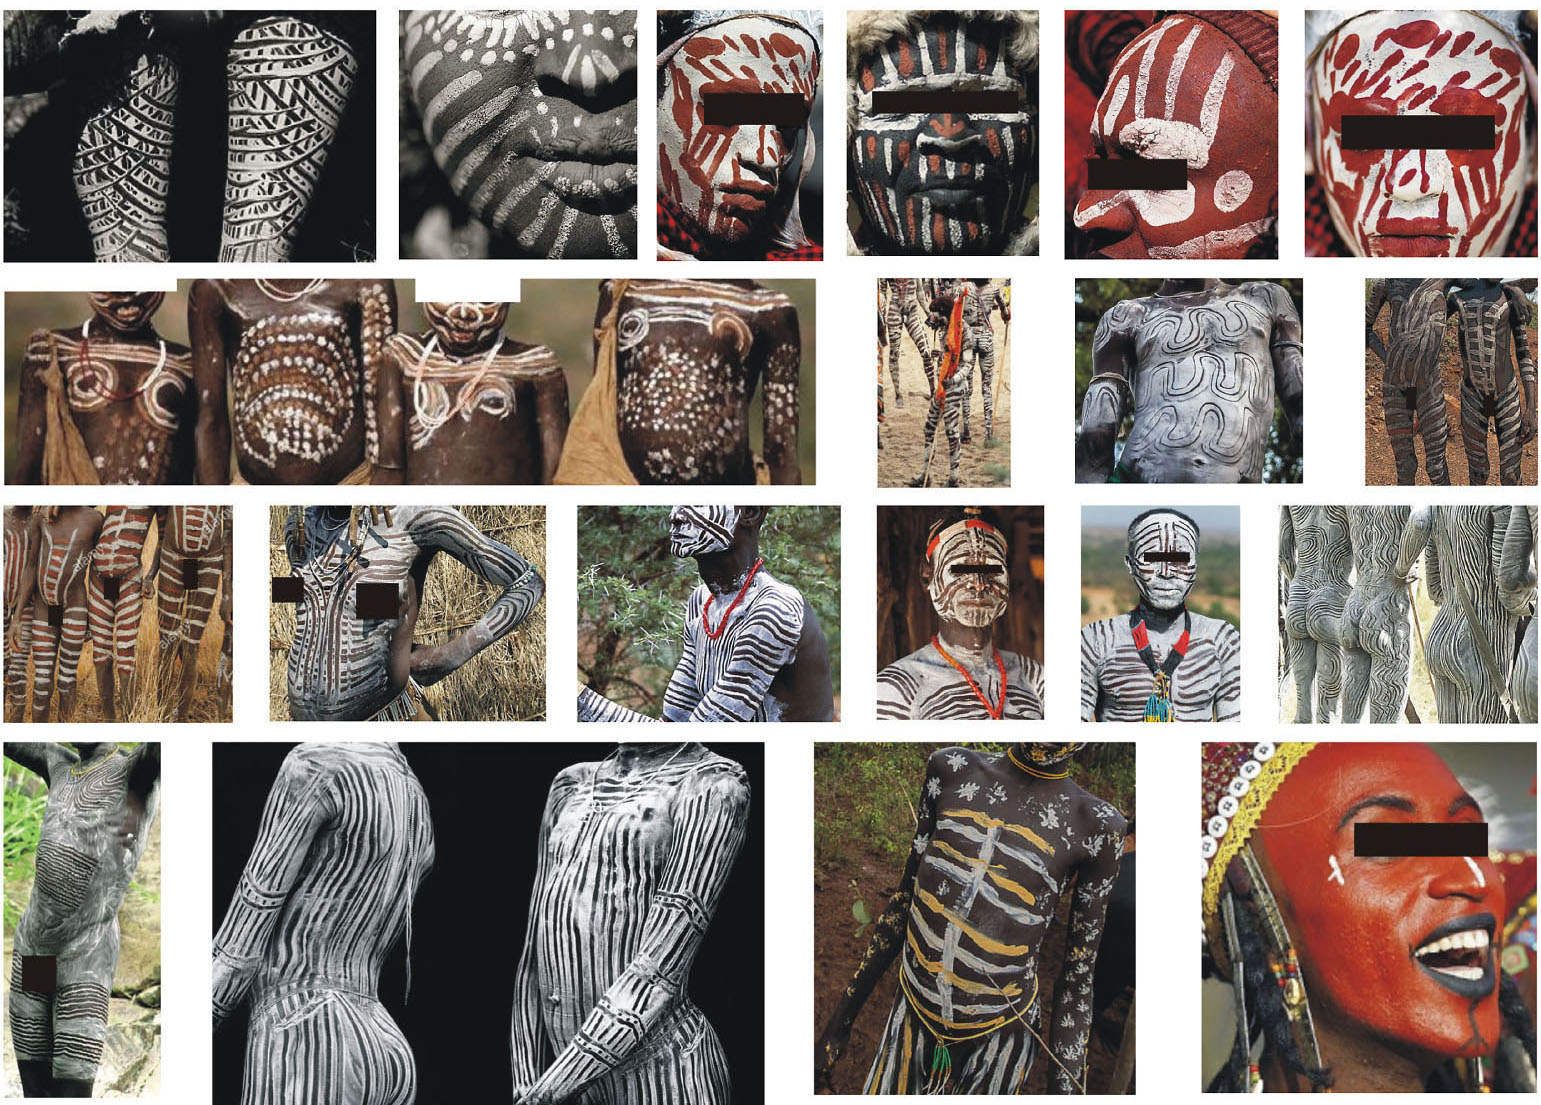 La peinture corporelle des peuples autochtones n'est pas qu'esthétique